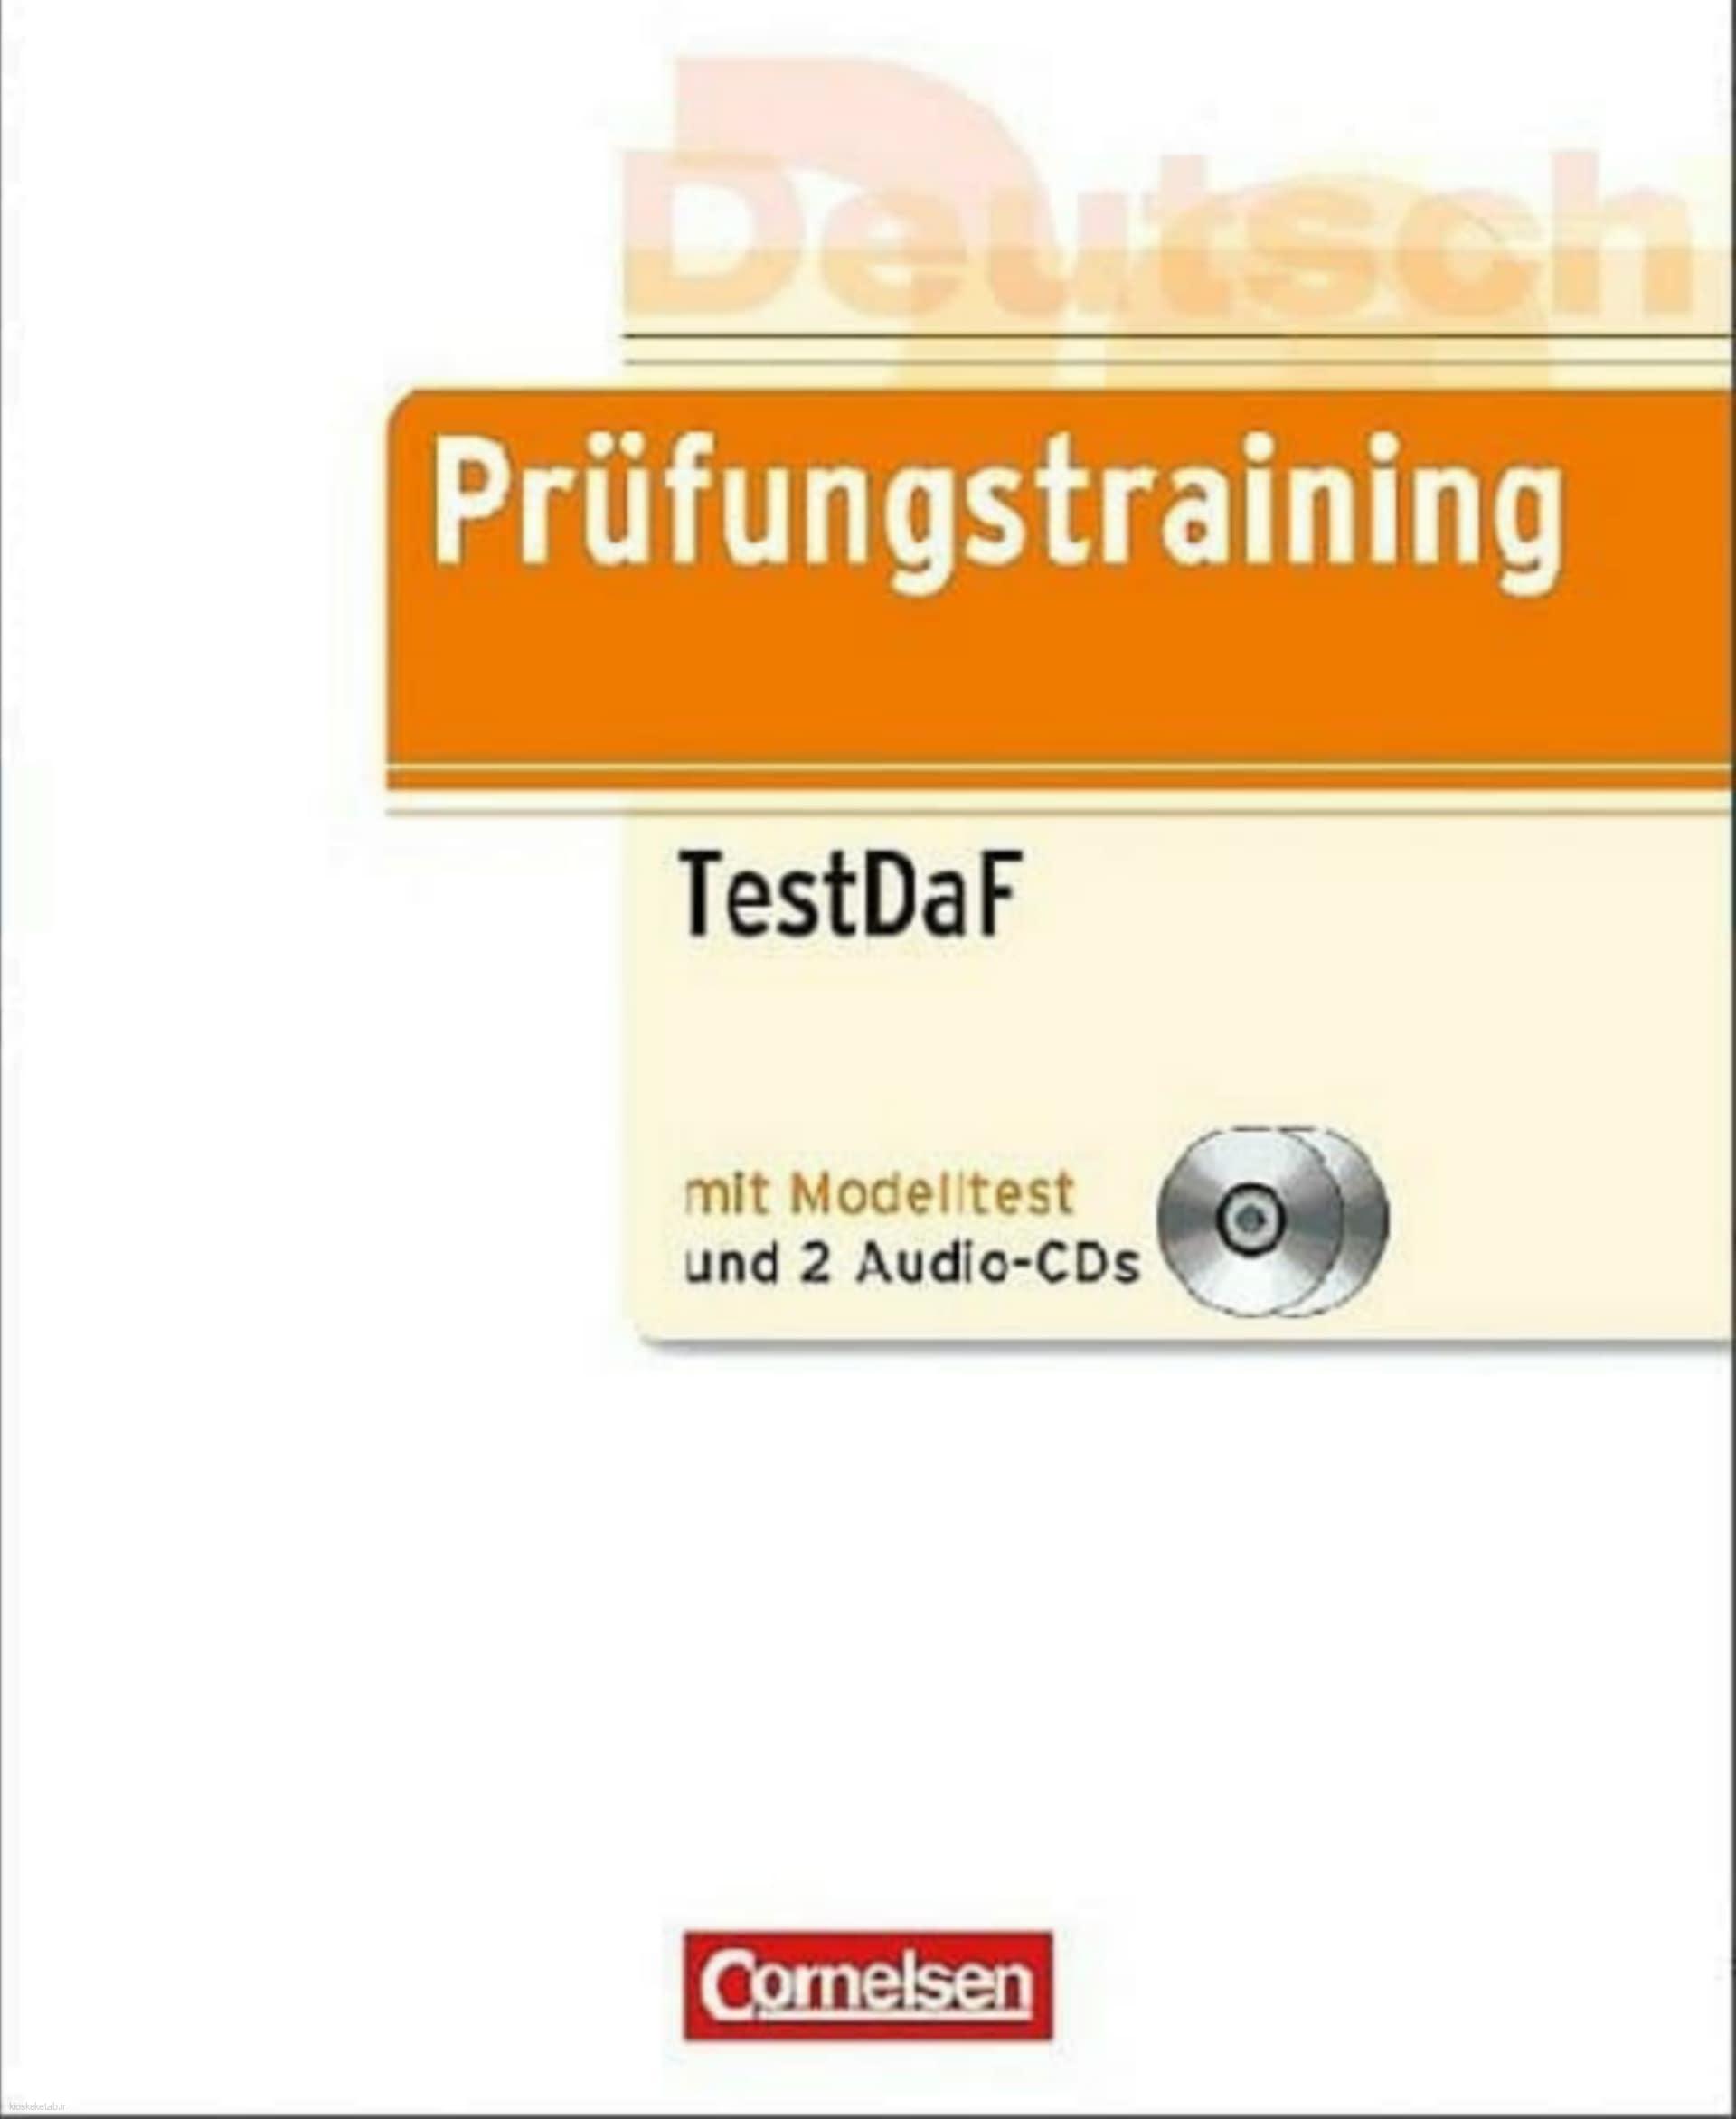 دانلود کتاب آلمانیprüfungstraining testdaf